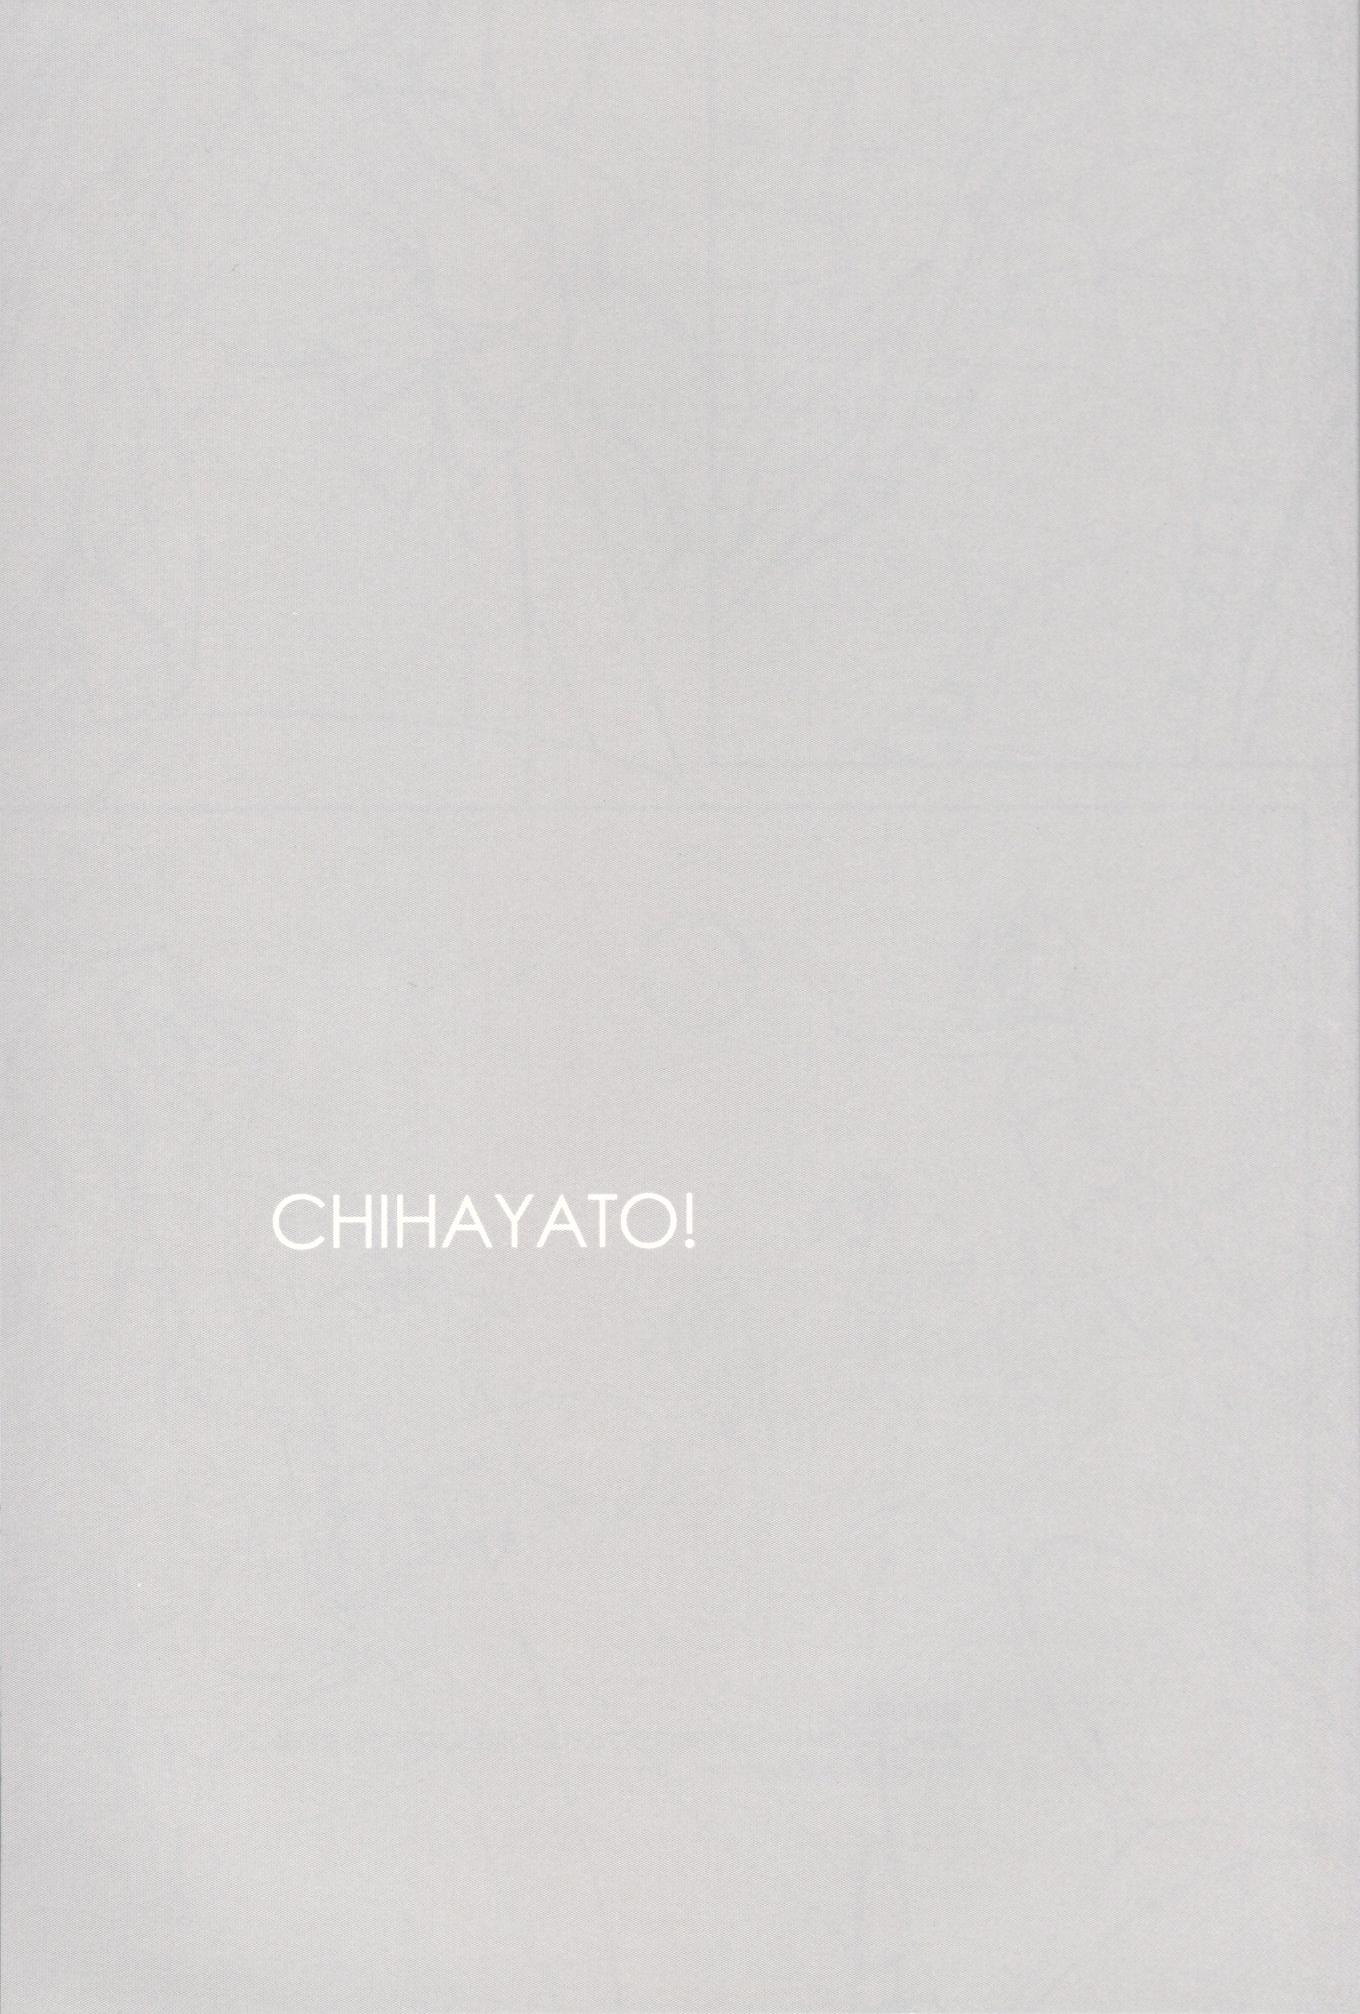 CHIHAYATO! 1